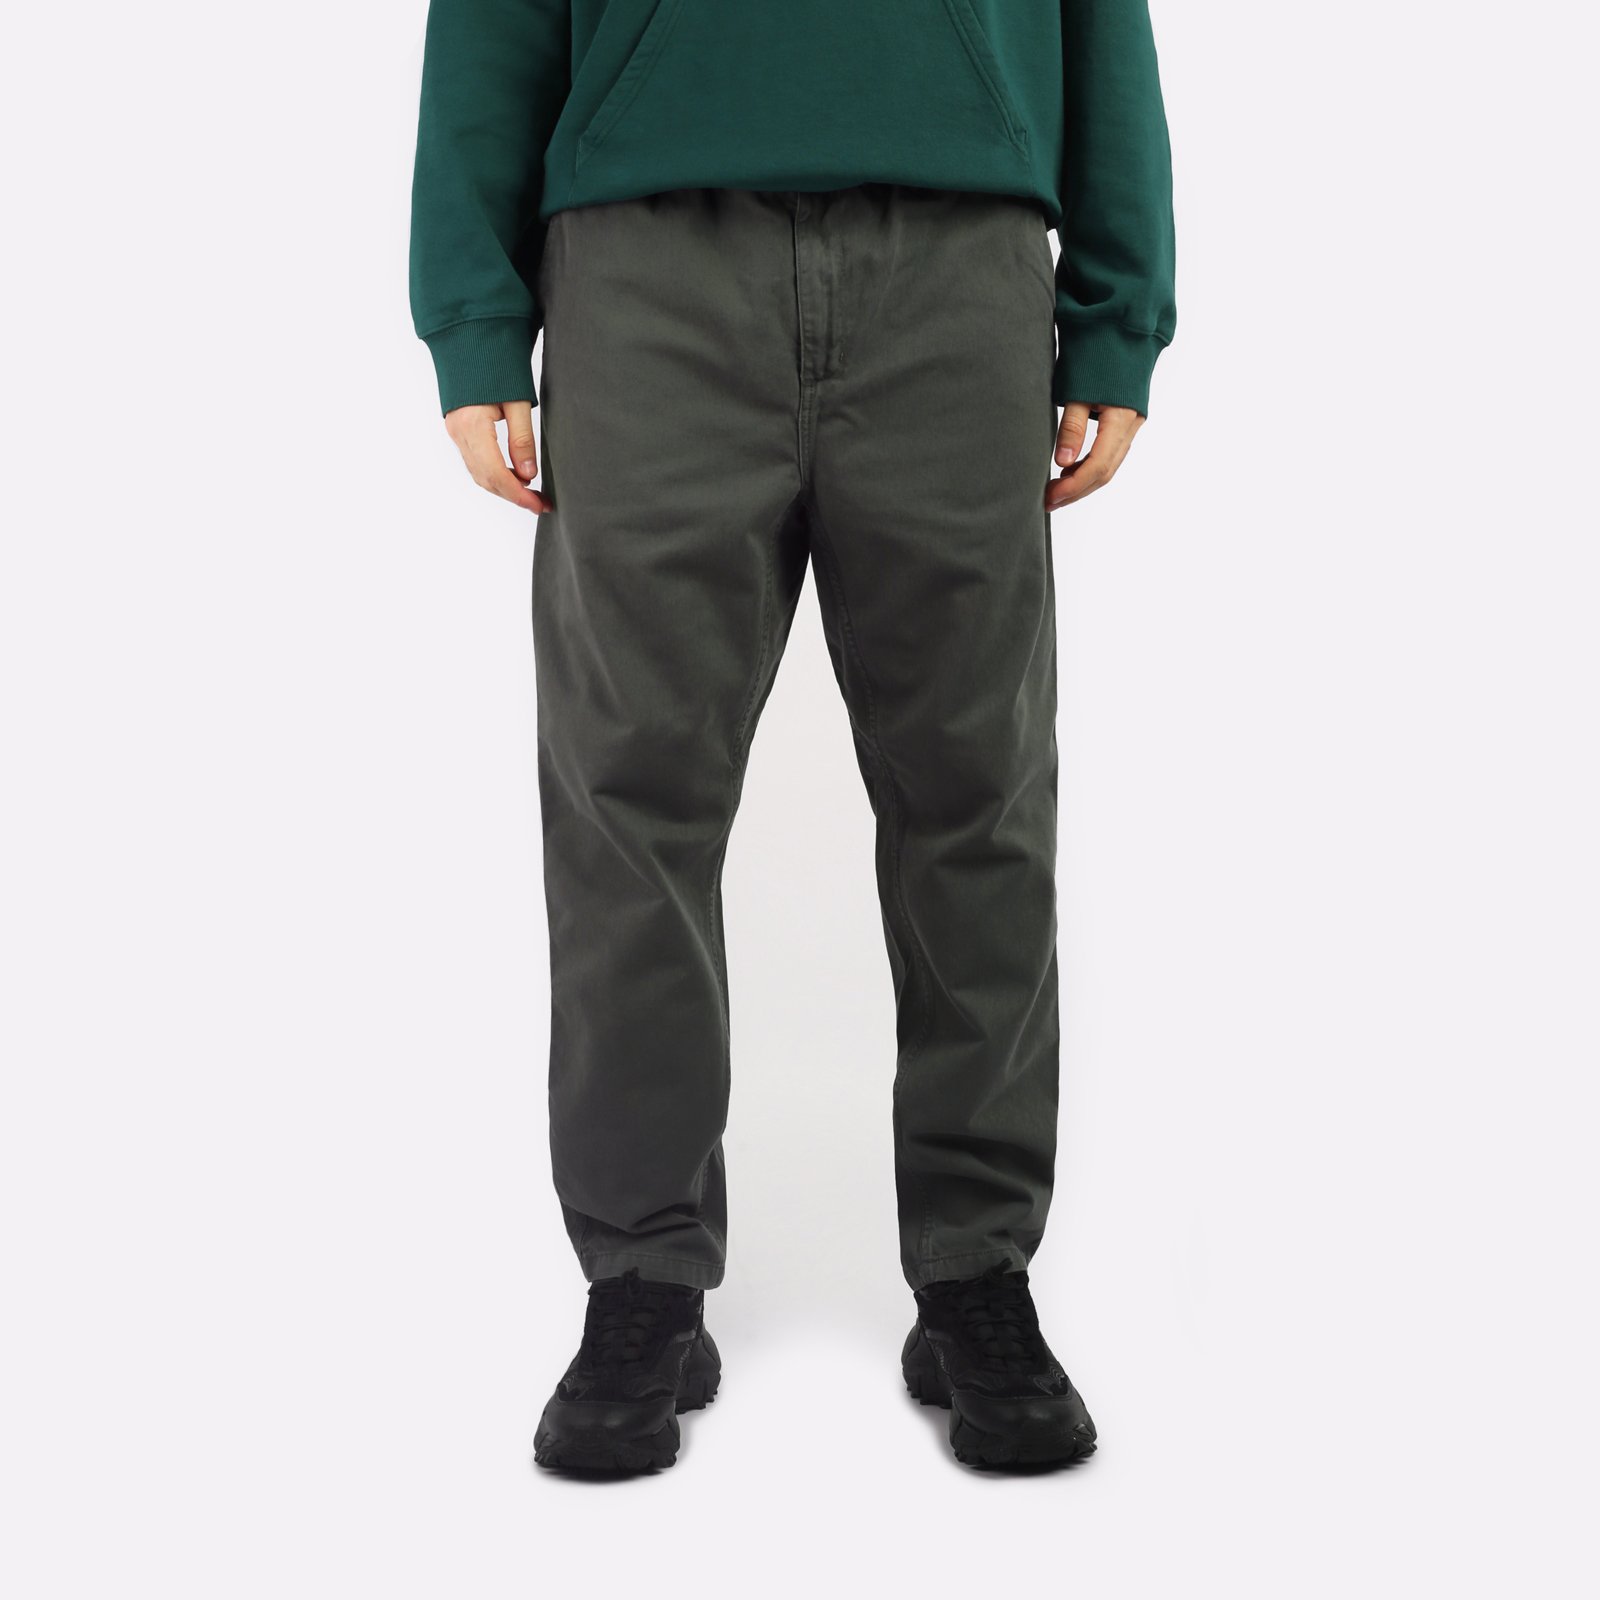 мужские зеленые брюки Carhartt WIP Flint Pant I029919-jura - цена, описание, фото 1